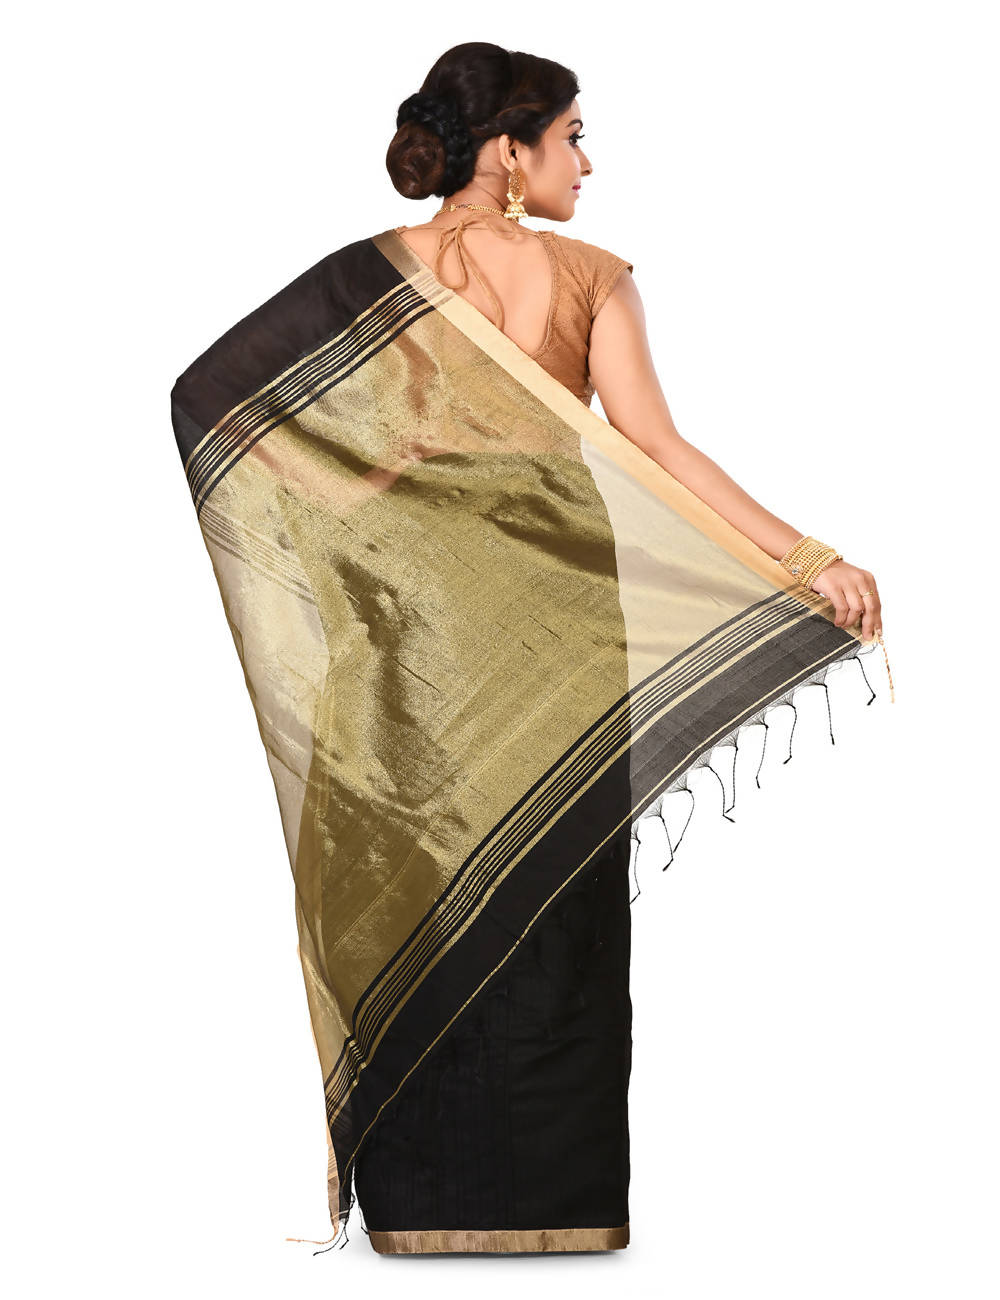 Black Bengal zari Handwoven saree